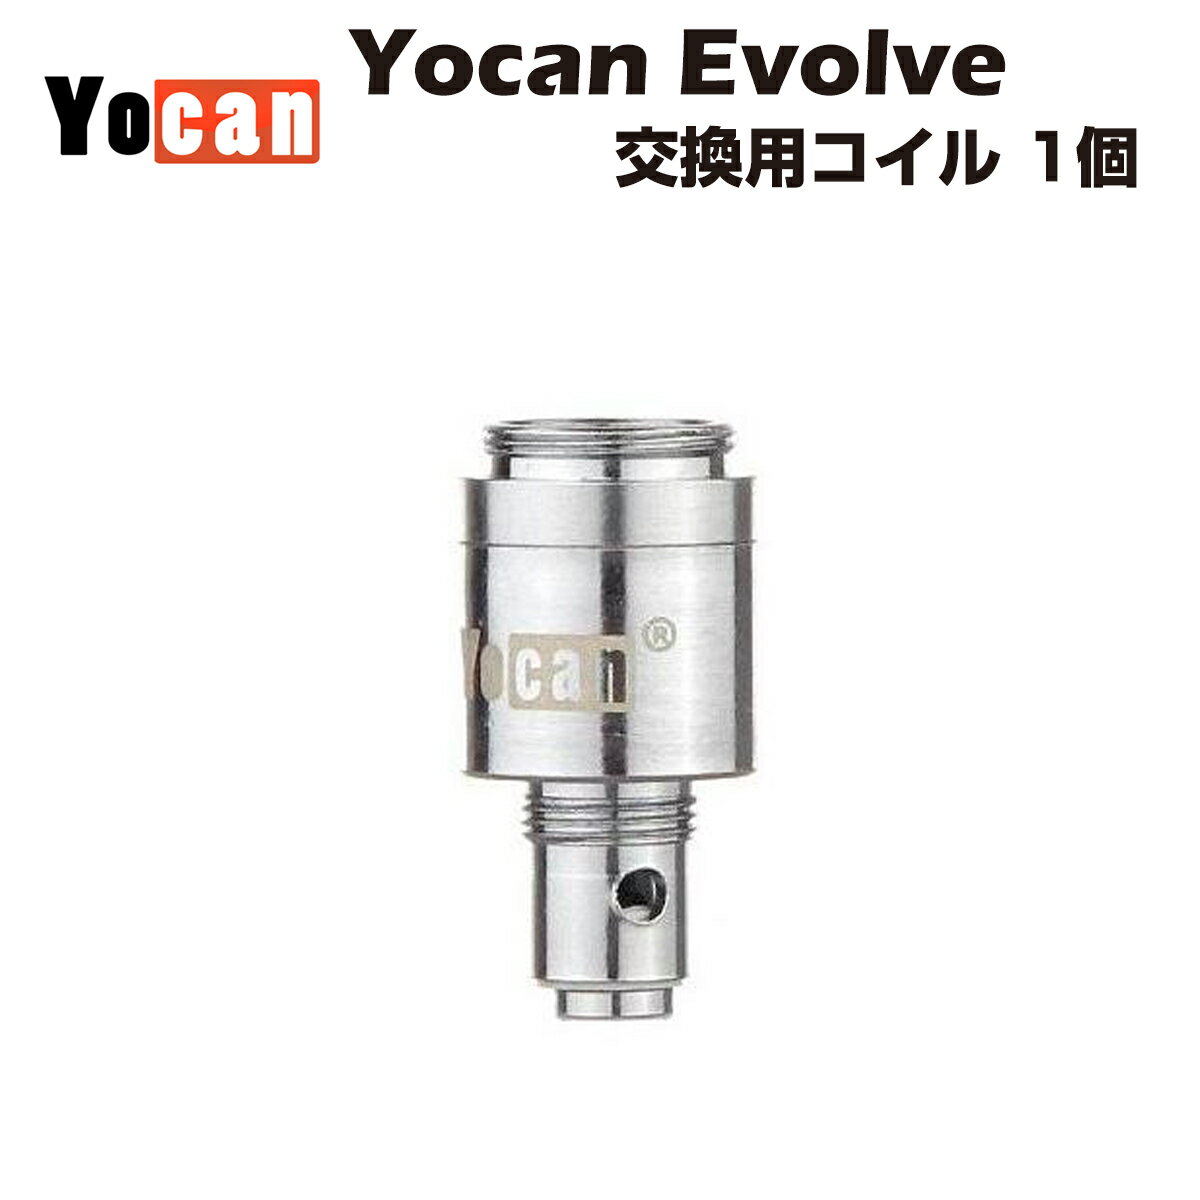 Yocan Evolve 交換用コイル 1個です。 クオーツ素材のコイルで気化の際に不純物が発生しにくく素材そのものの風味を楽しむ事ができます。 チャンバー内の2つのクオーツロッドコイルで、強い火力で気化させることが出来ます。 対応機種 Yocan Evolve Kit Yocan Evolve 2020 Version Kit 内容品 Yocan Evolve 交換用コイル×1